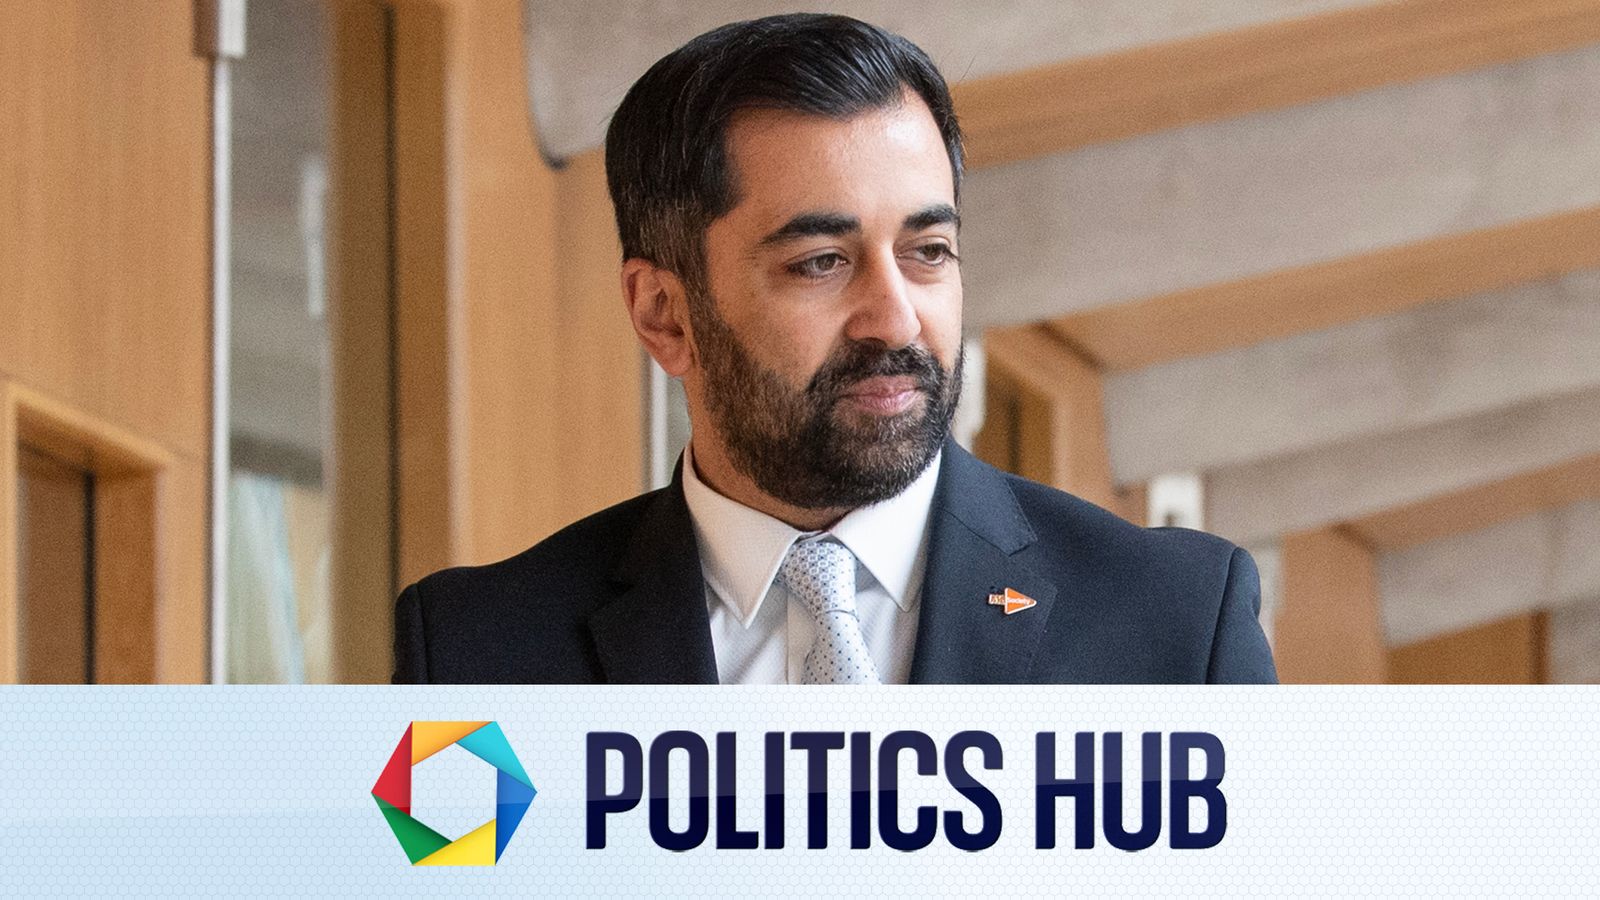 Actualités politiques : Une nouvelle offre lancée pour se débarrasser de Humza Yousaf alors qu'il se bat pour rester premier ministre d'Écosse |  Actualités politiques